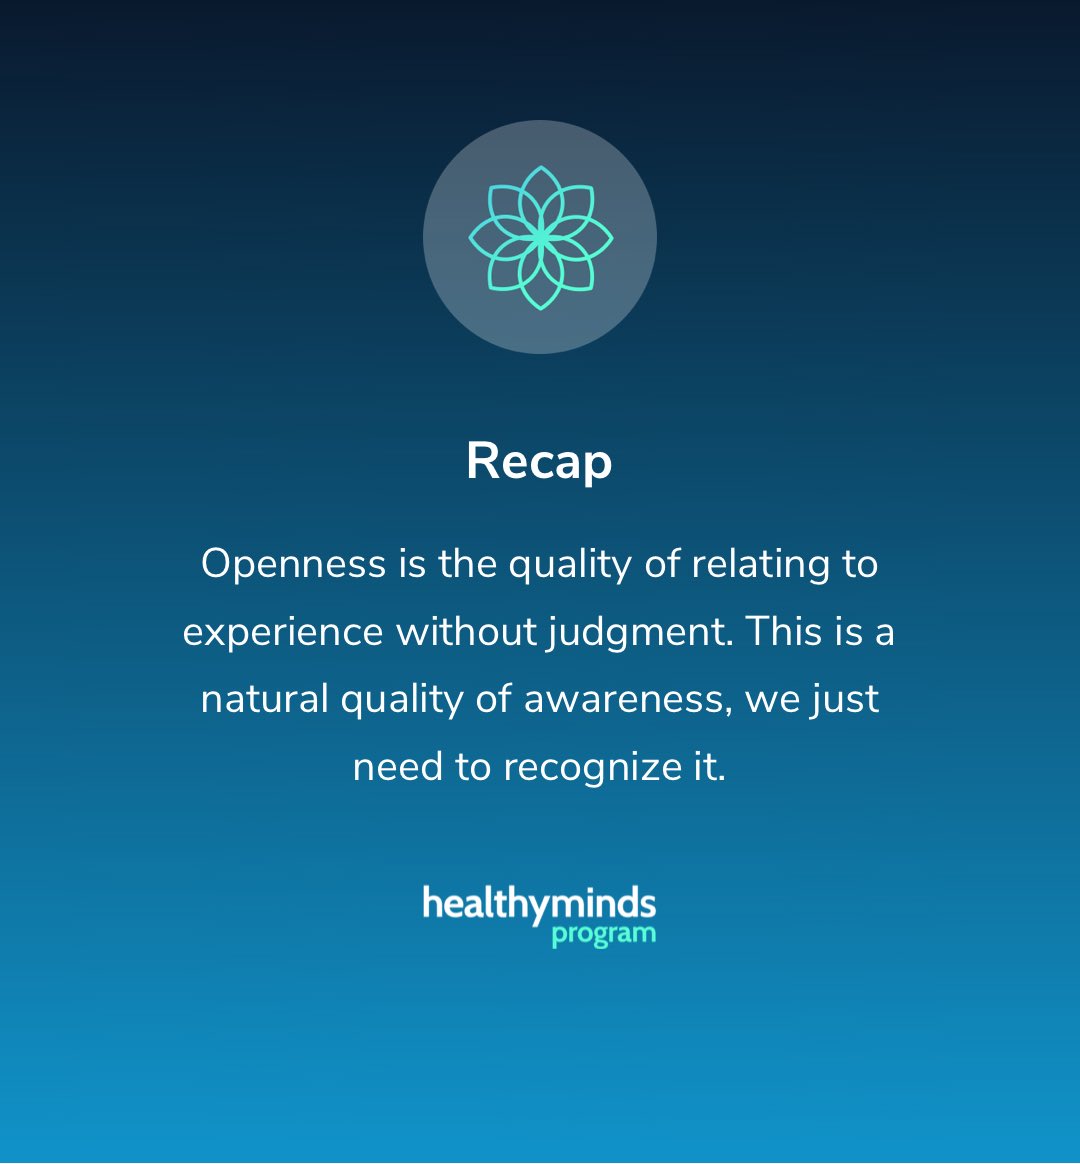 #mindfulness ⁦@healthymindsorg⁩